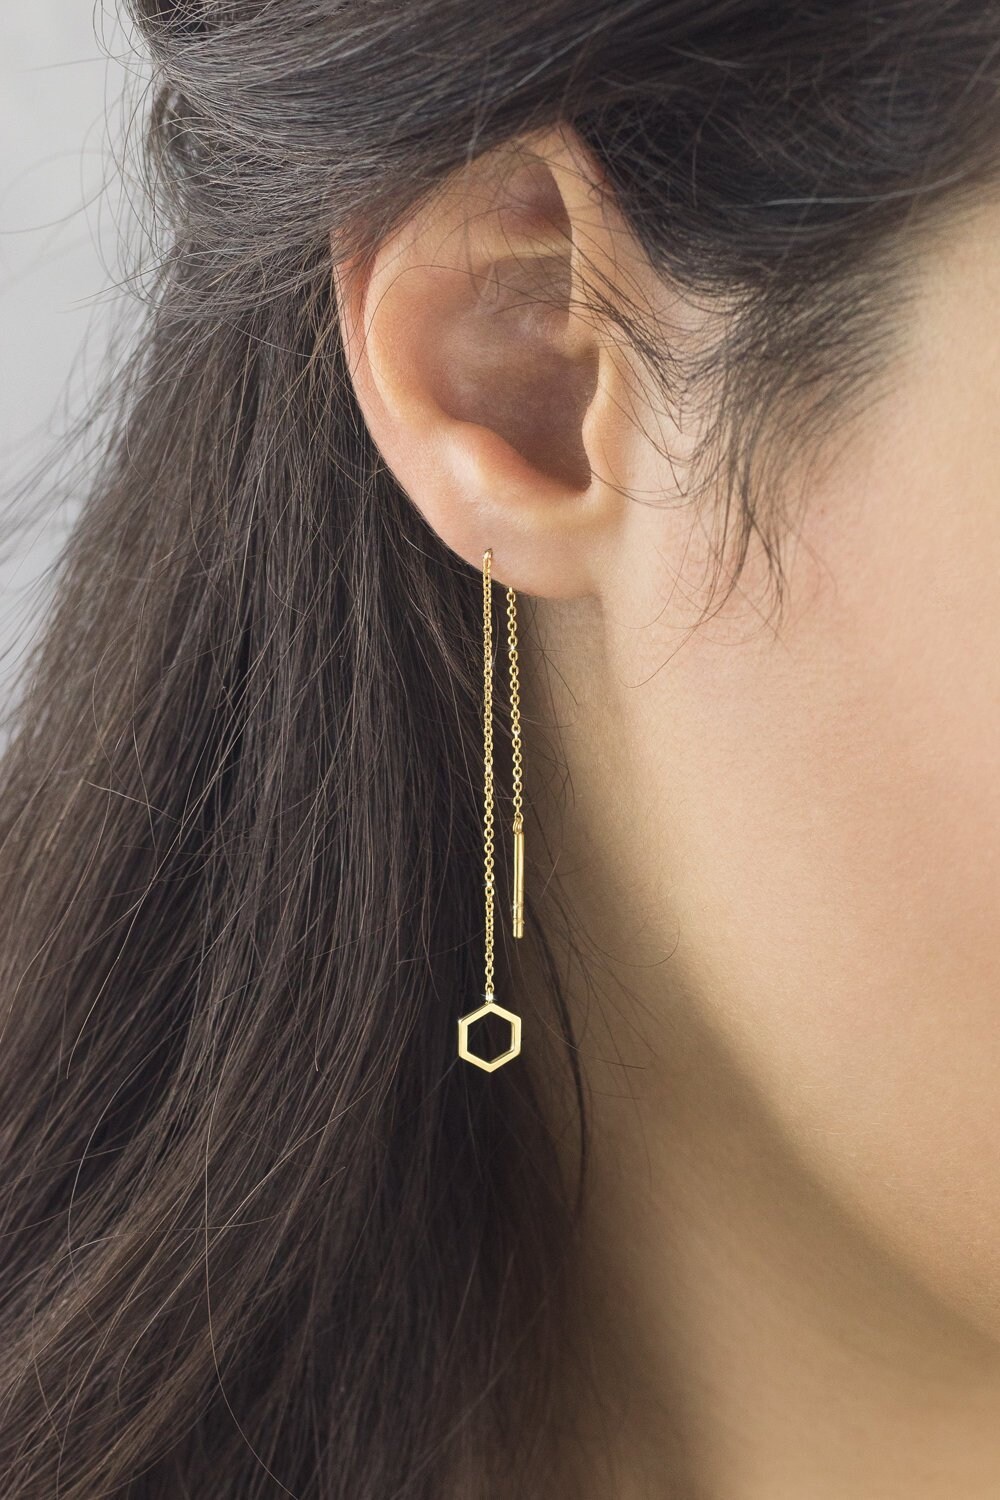 Scosha | Fairy Bead Threader + 10K Gold Drop Earring | Firecracker